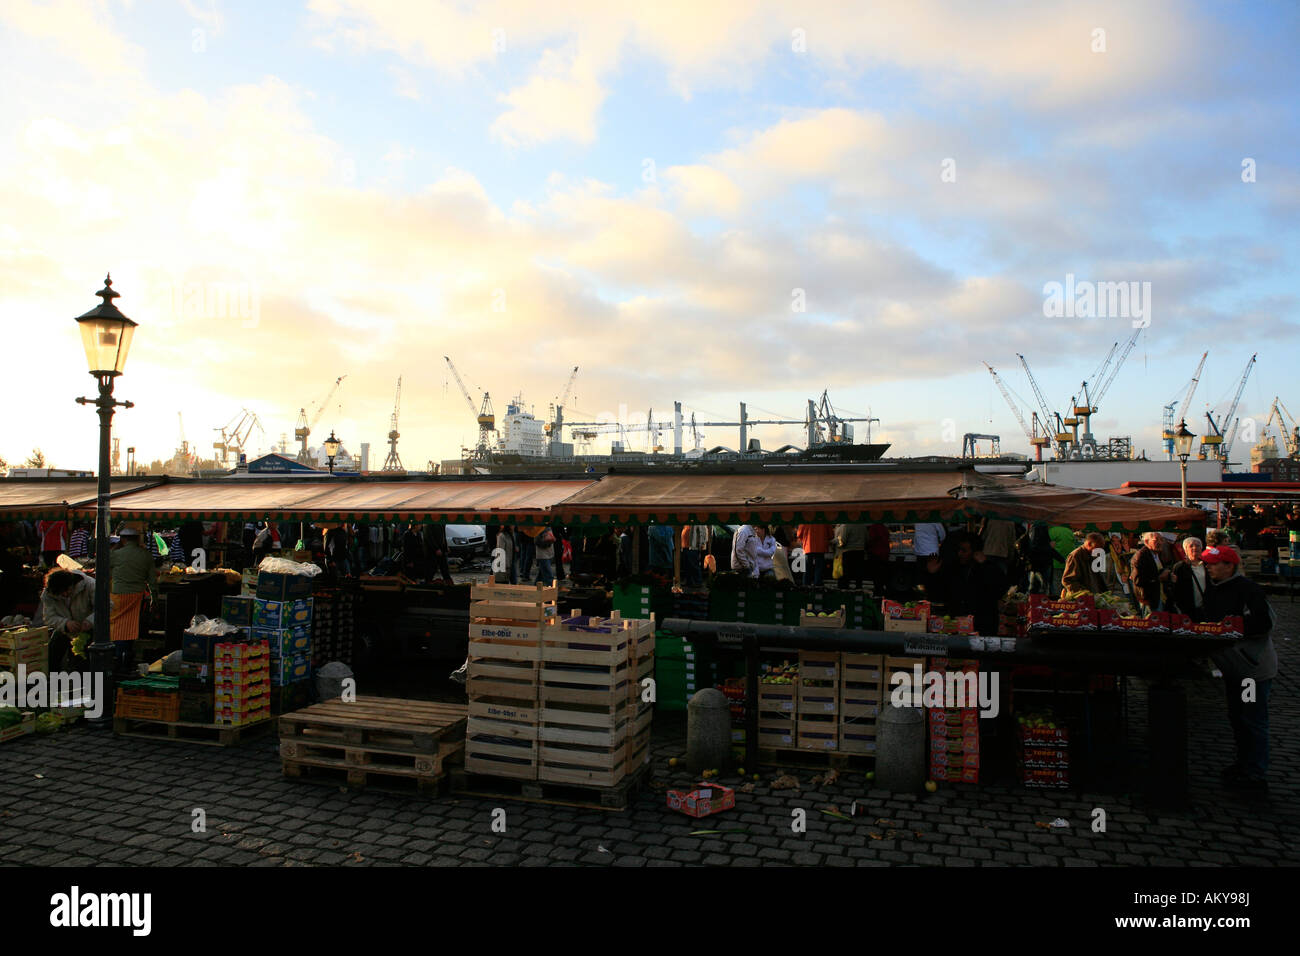 Market stand on the Hamburger Fischmarkt in the morning, Altona, Hamburg, Germany Stock Photo